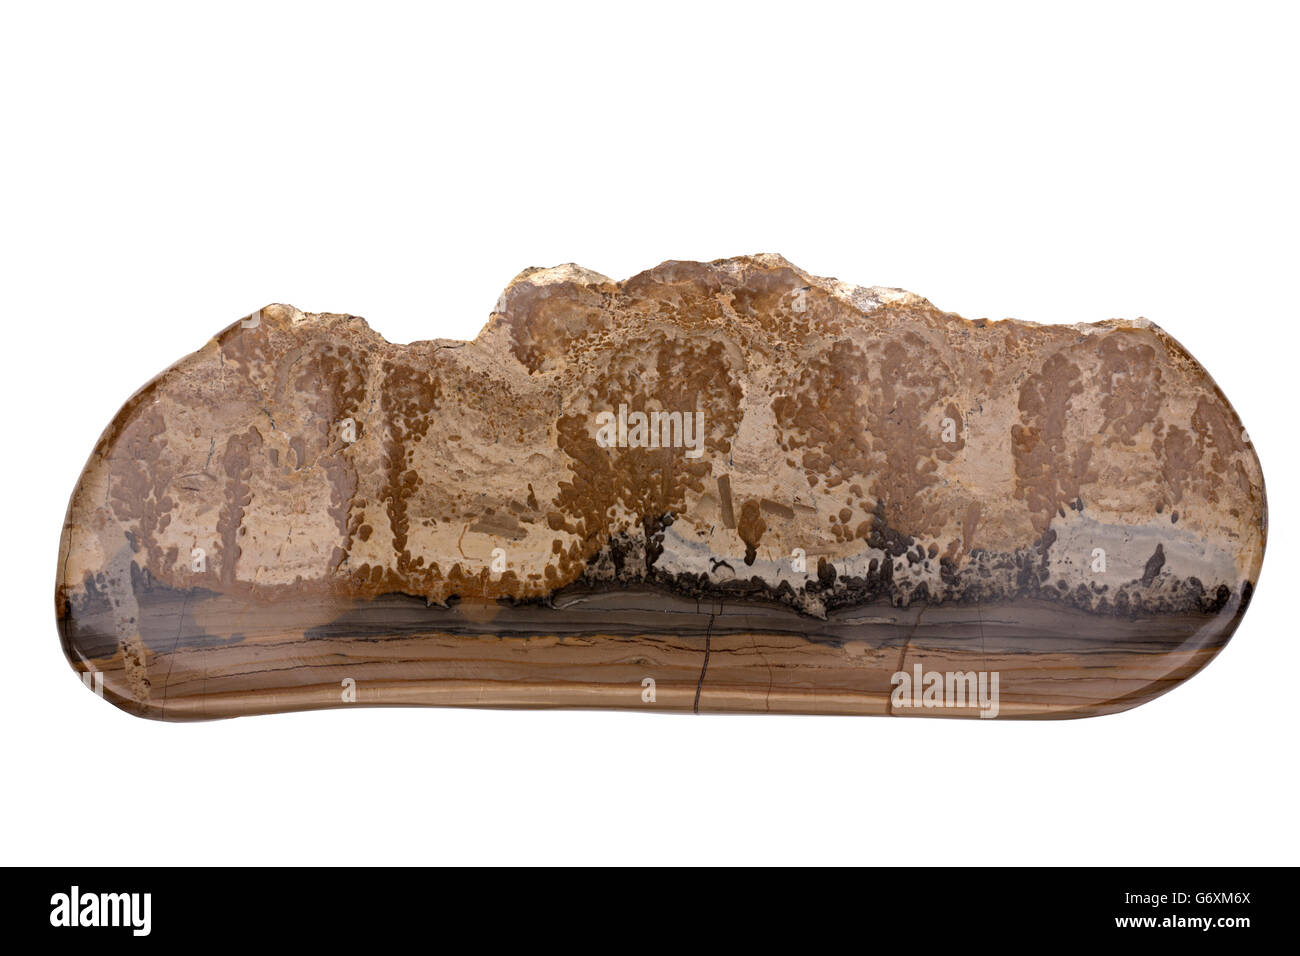 Cotham marmo o marmo del paesaggio è una varietà di stromatolitic retica calcare proveniente dalla Penarth Group, trovata nel Galles del Sud Foto Stock